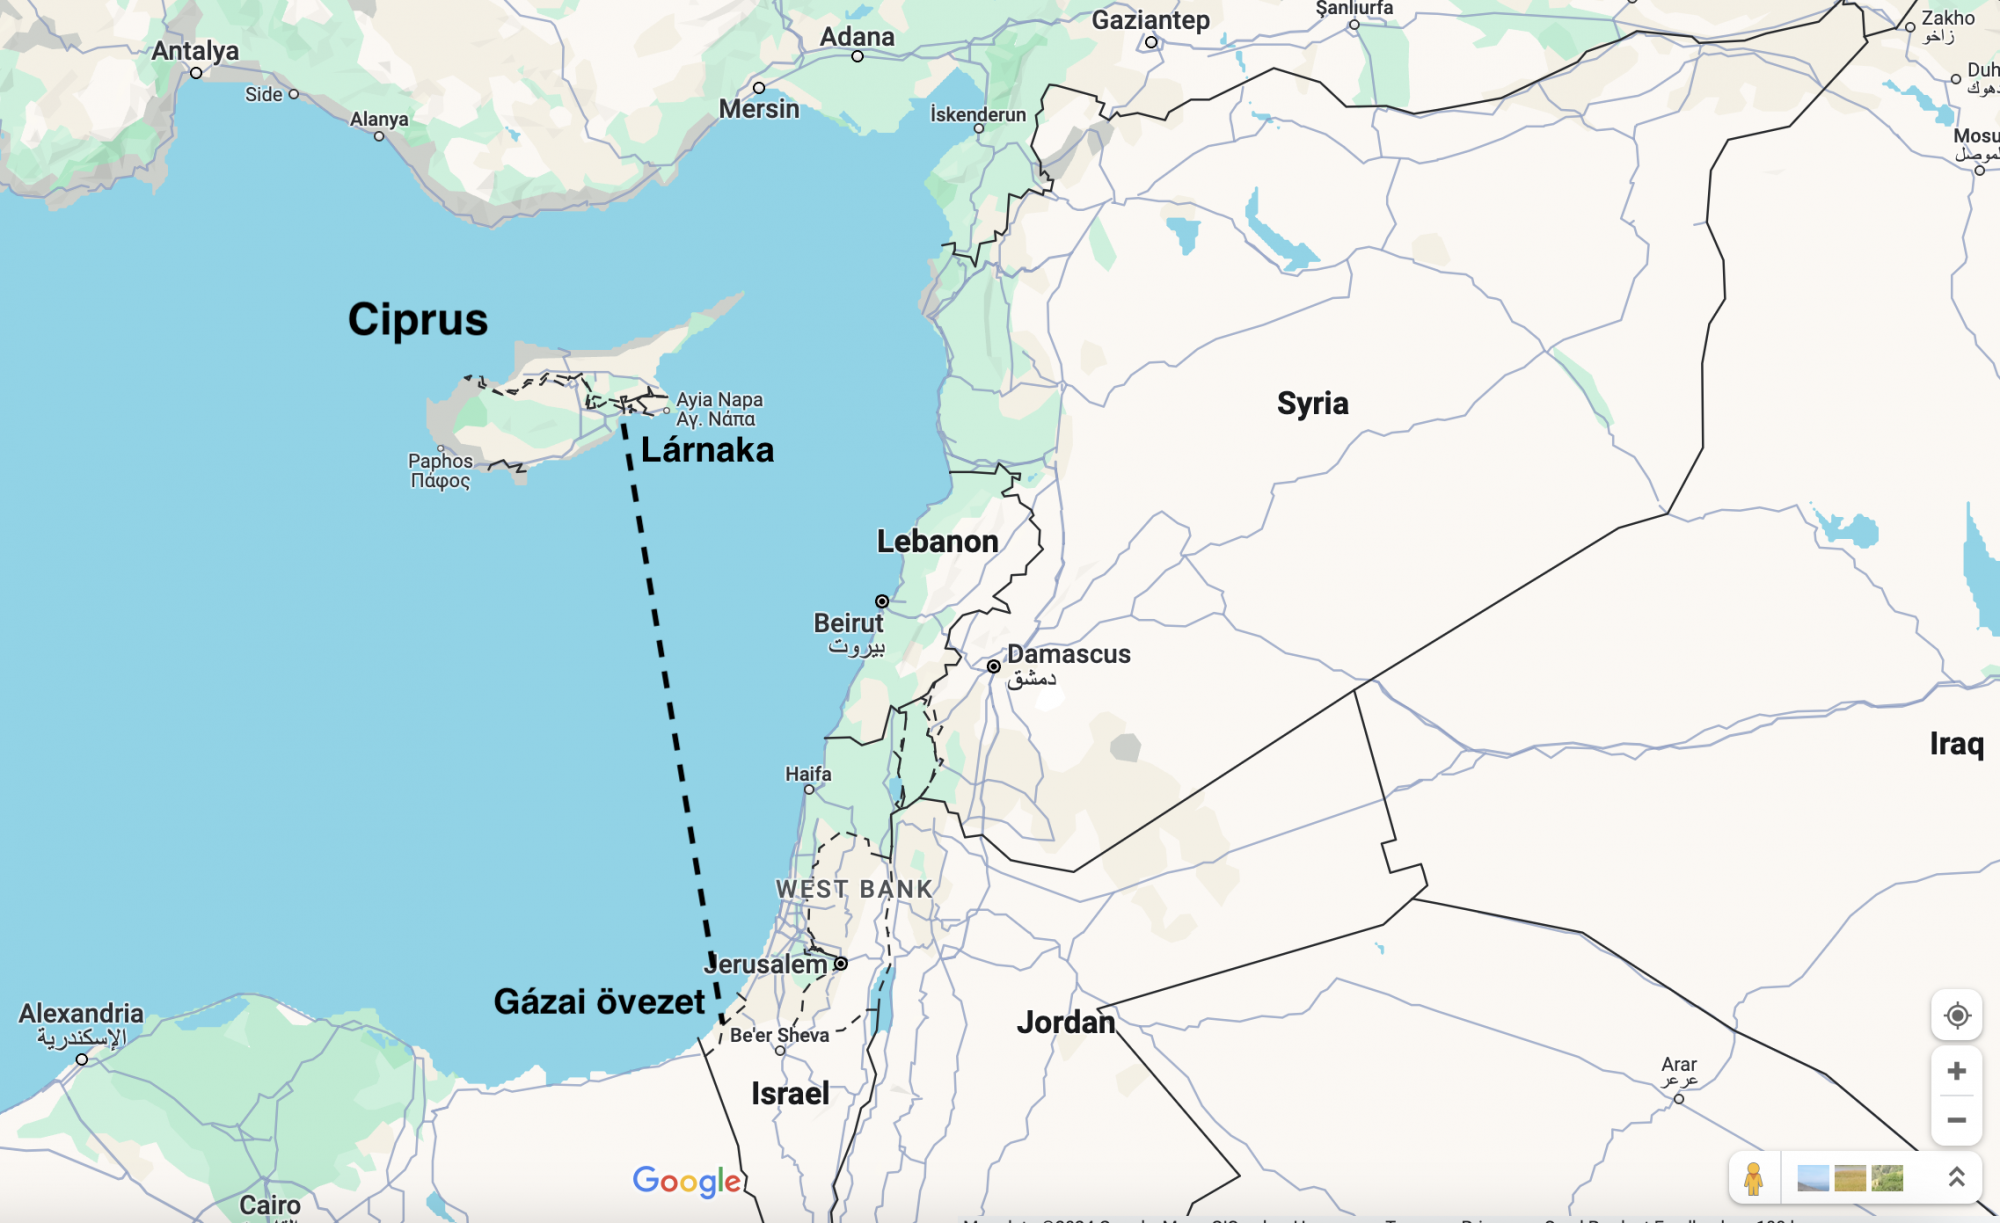 Az EU megnyitja a tengeri folyosót, hogy Ciprusról segélyt küldhessenek Gázába